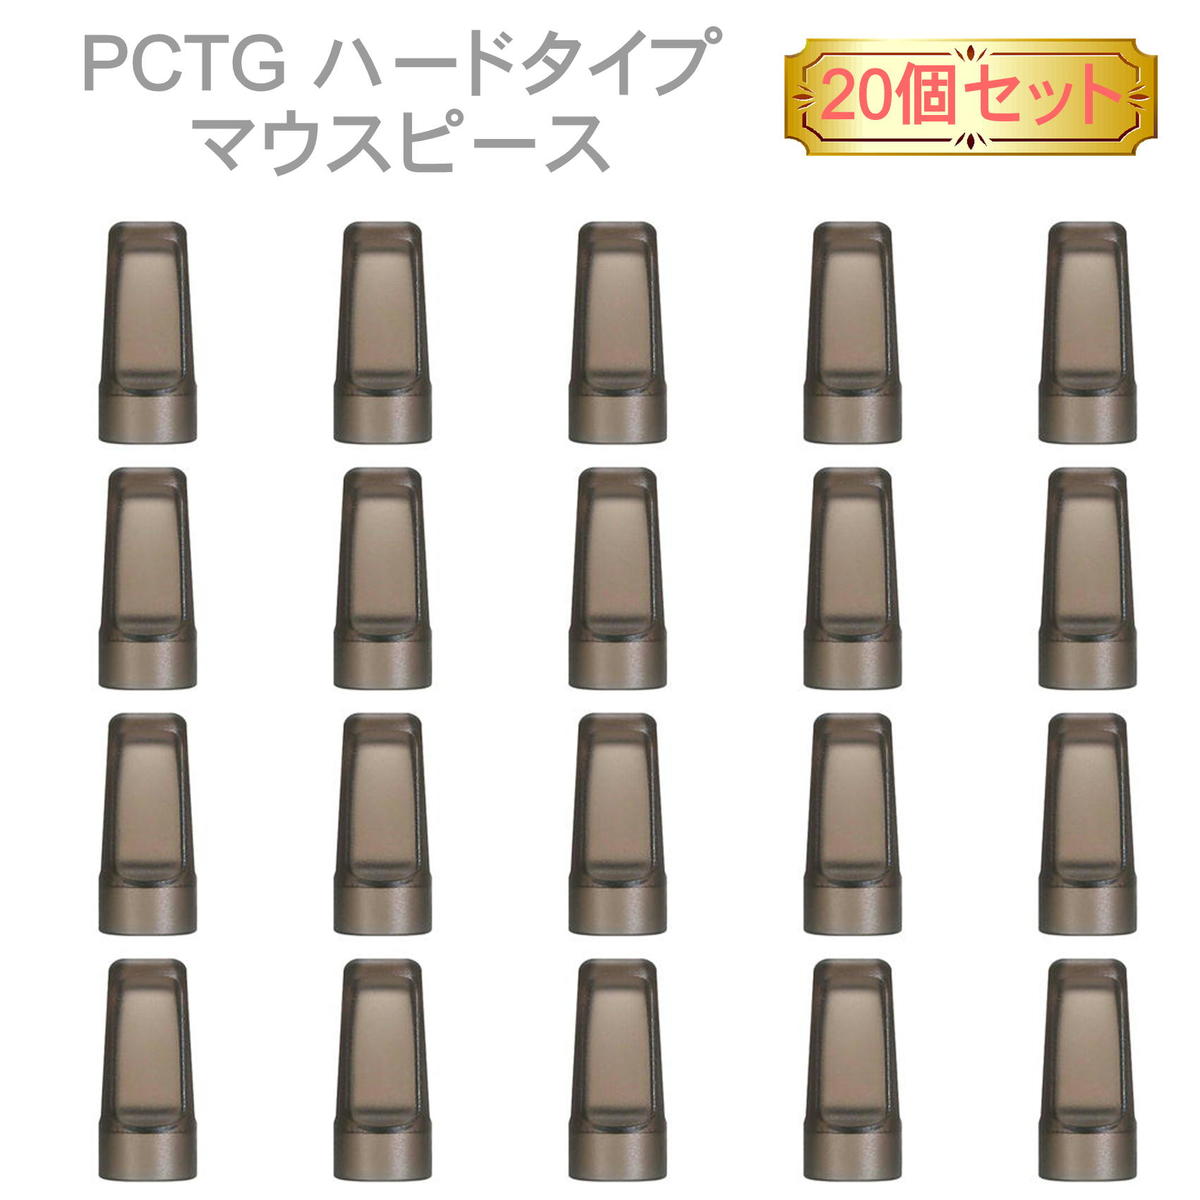 PCTG ハードタイプ マウスピース 20個 キャップ 電子タバコ アクセサリー タバコ 吸い口 PCTG ハードタイプ マウスピース 20個セット